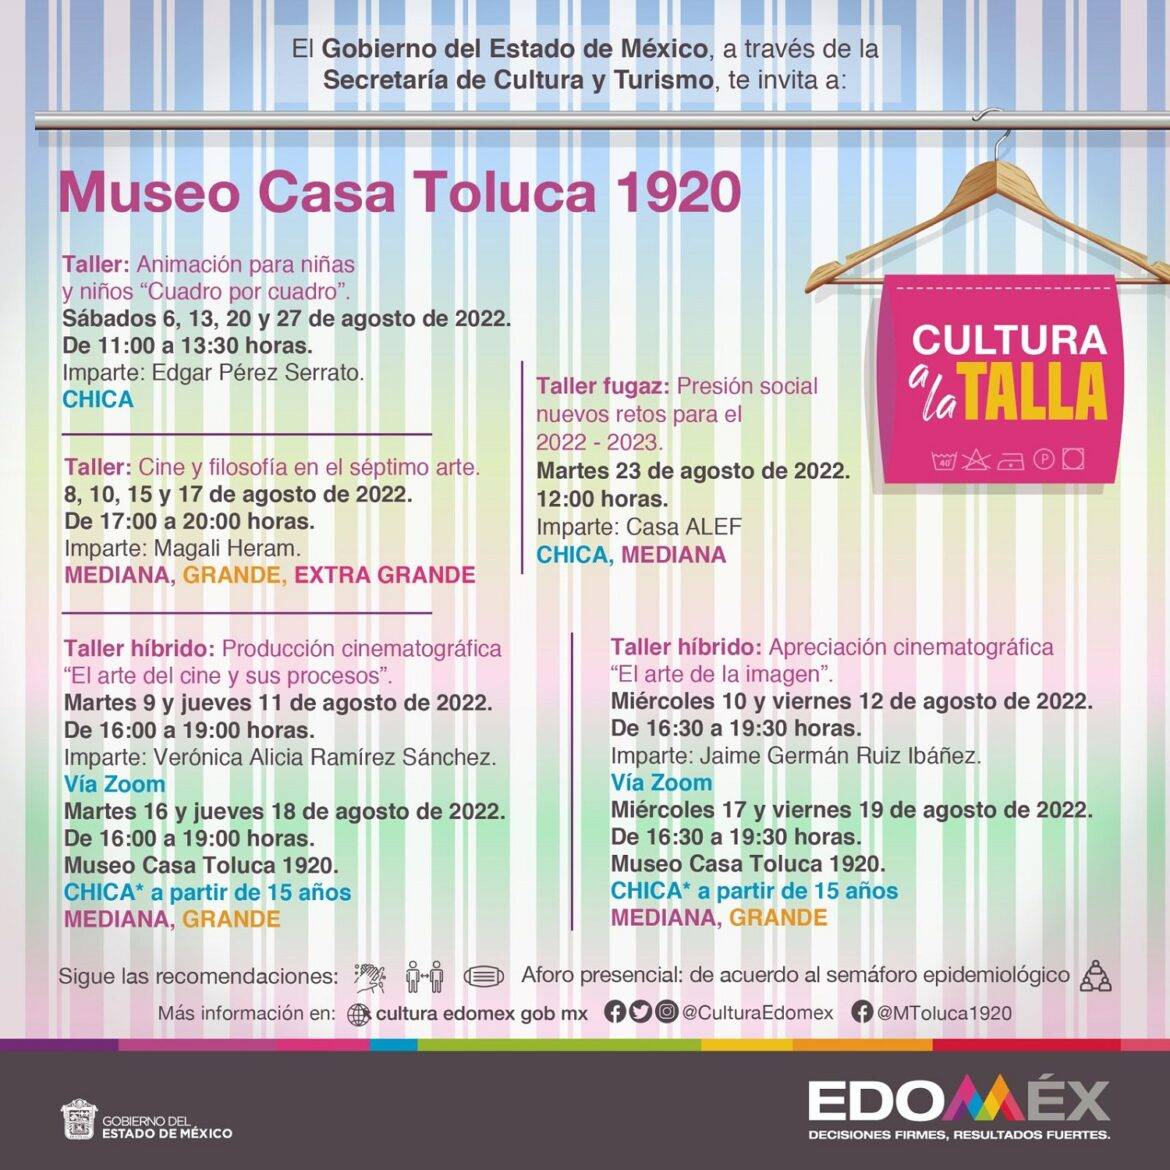 Organiza Museo Casa Toluca 1920 talleres de «Cultura a la Talla»